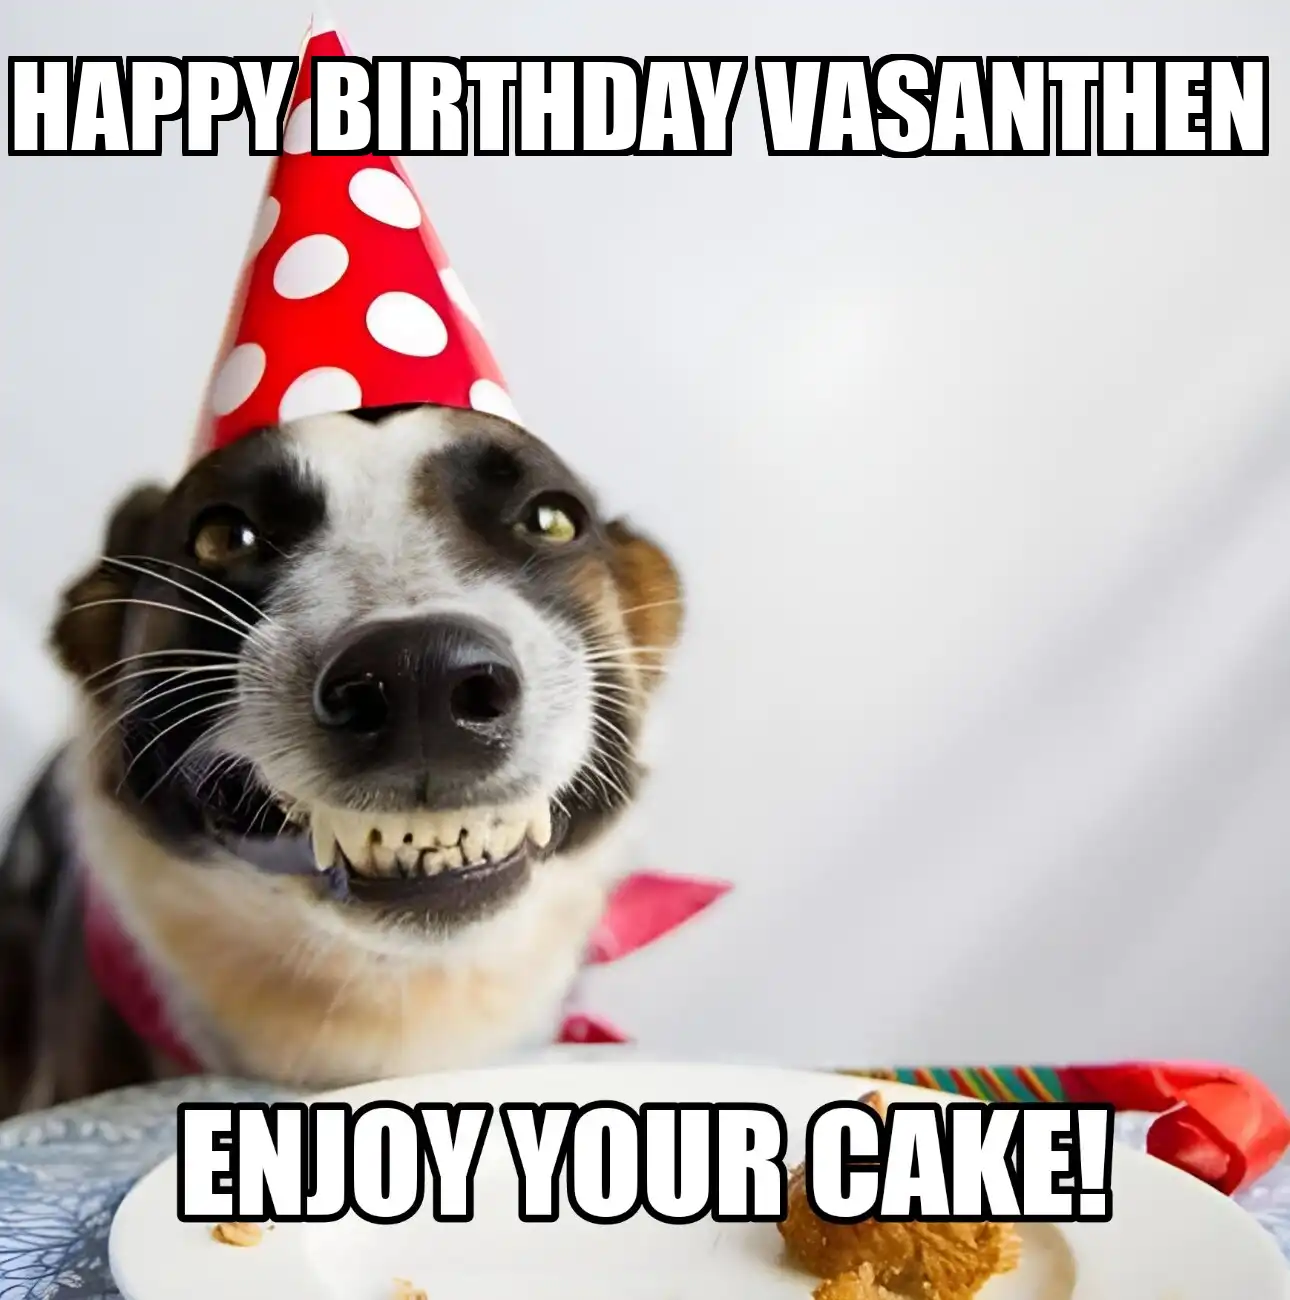 Happy Birthday Vasanthen Enjoy Your Cake Dog Meme